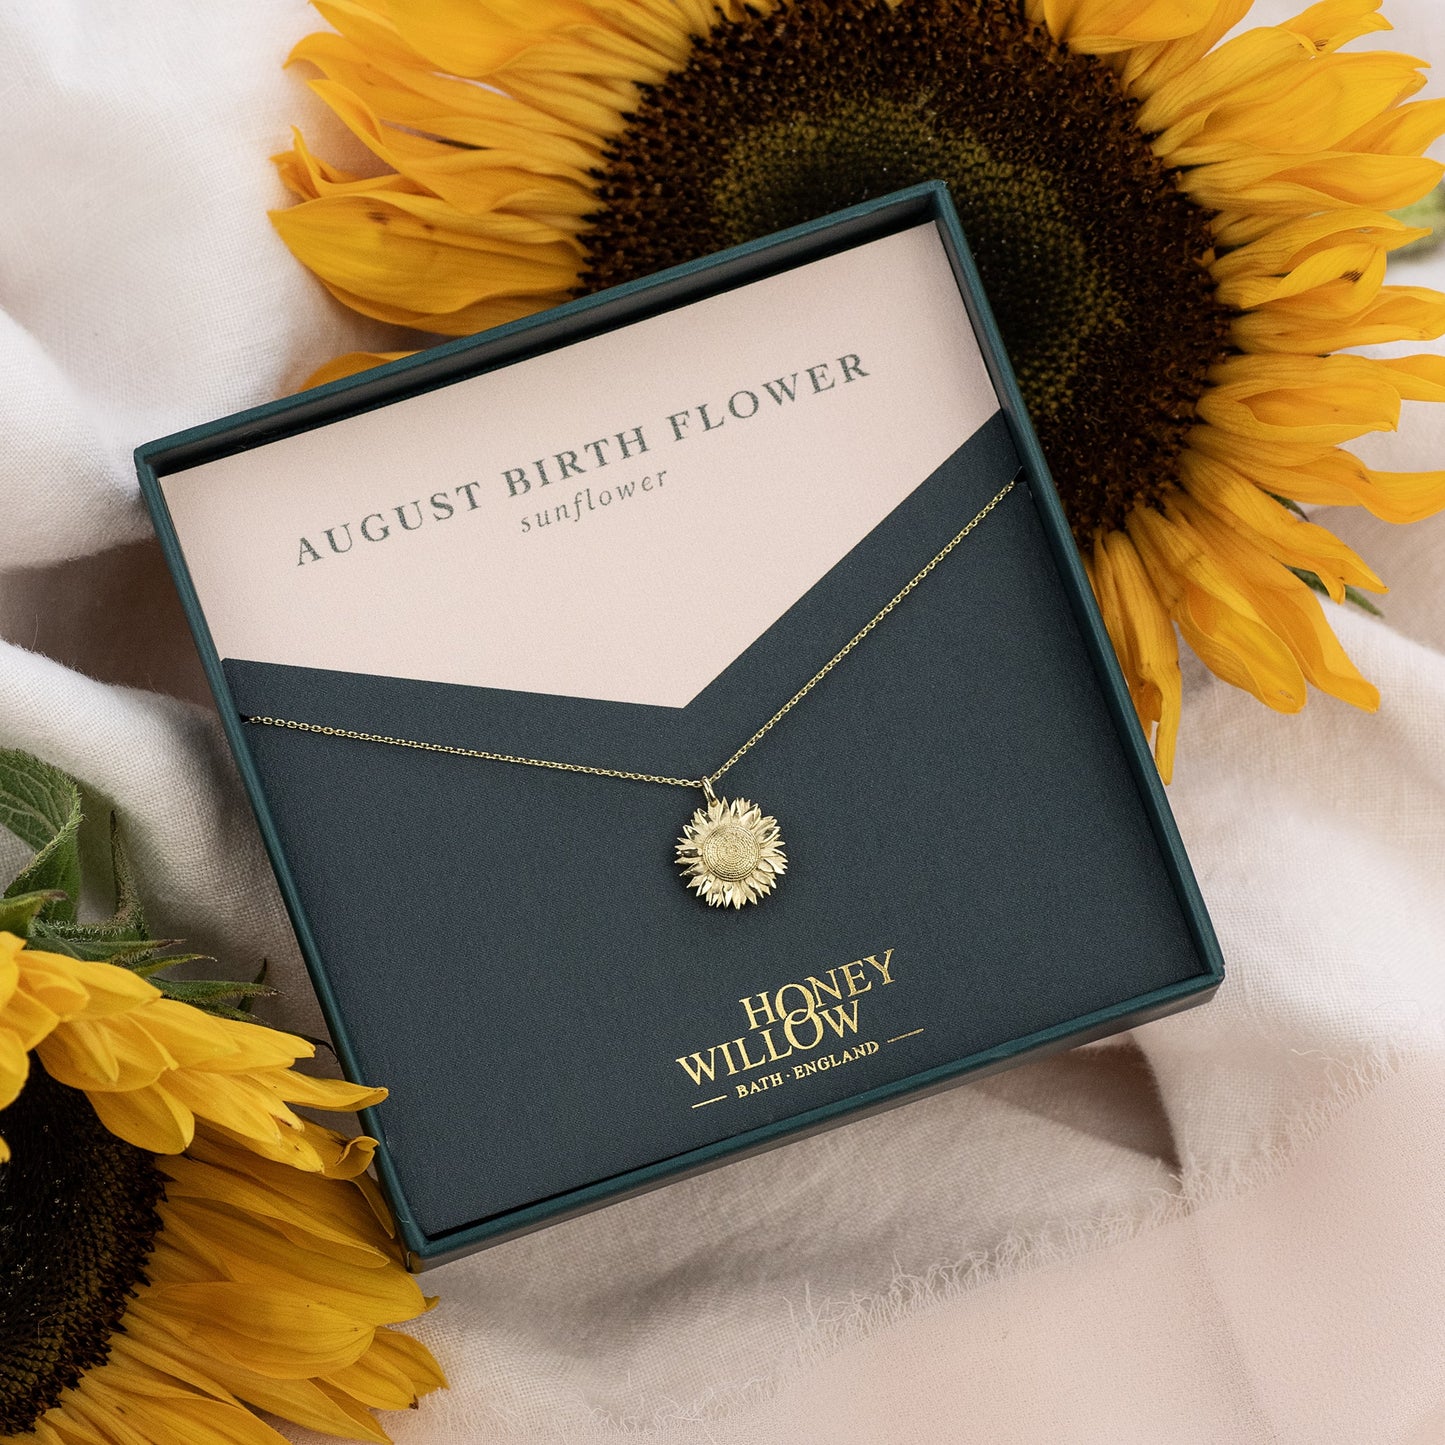 August Birth Flower Necklace - Sunflower - 9kt Gold